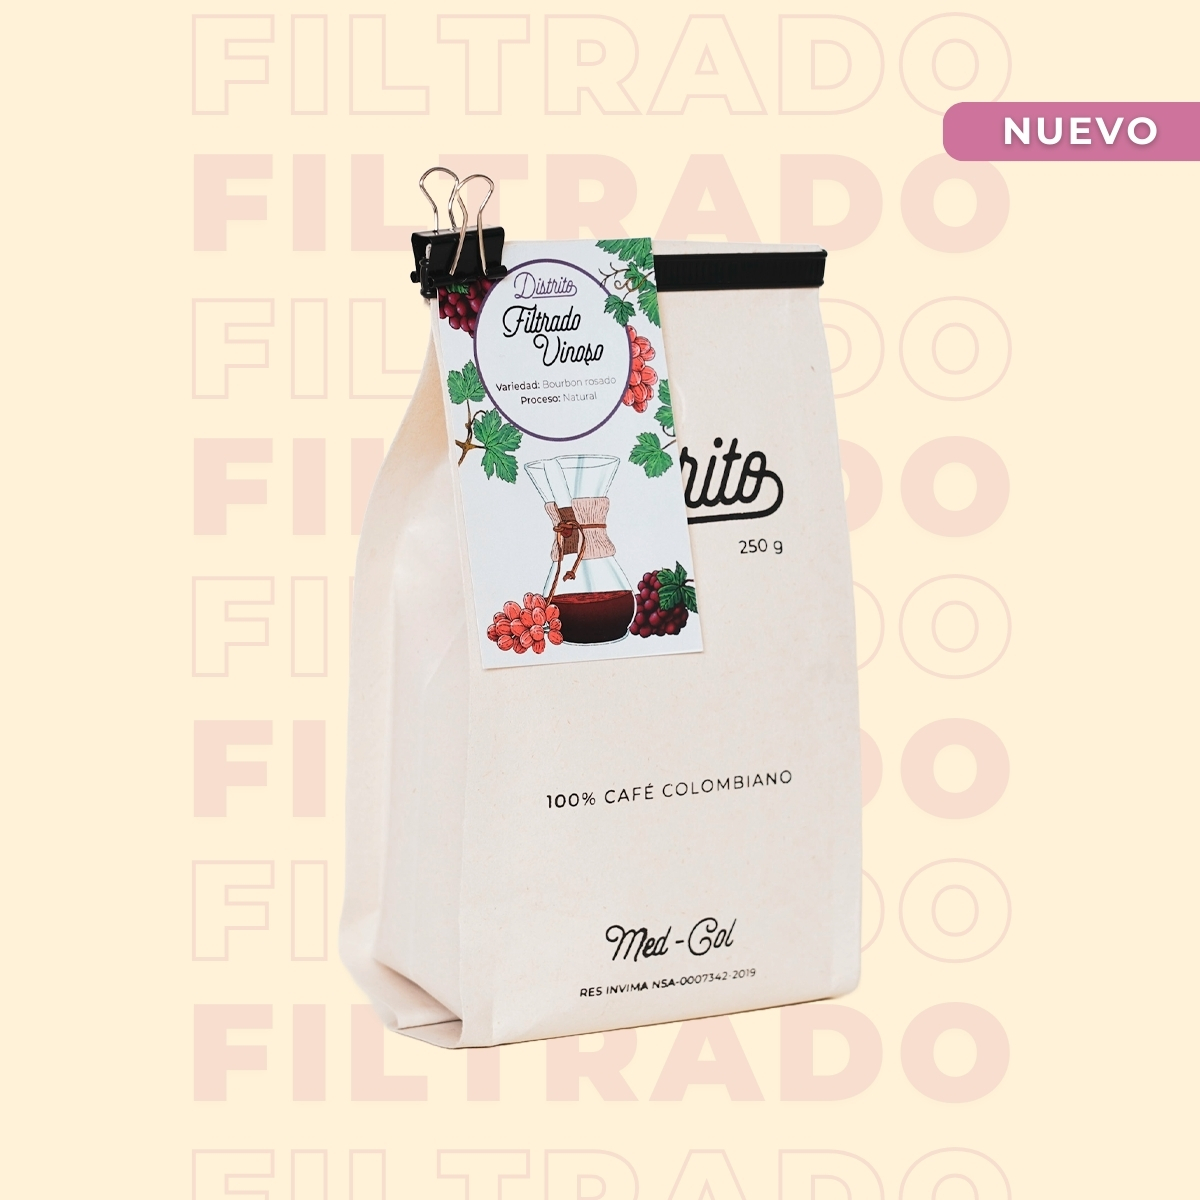 filtrado vinoso bolsa cafe - Café Especial - Filtrado Vinoso